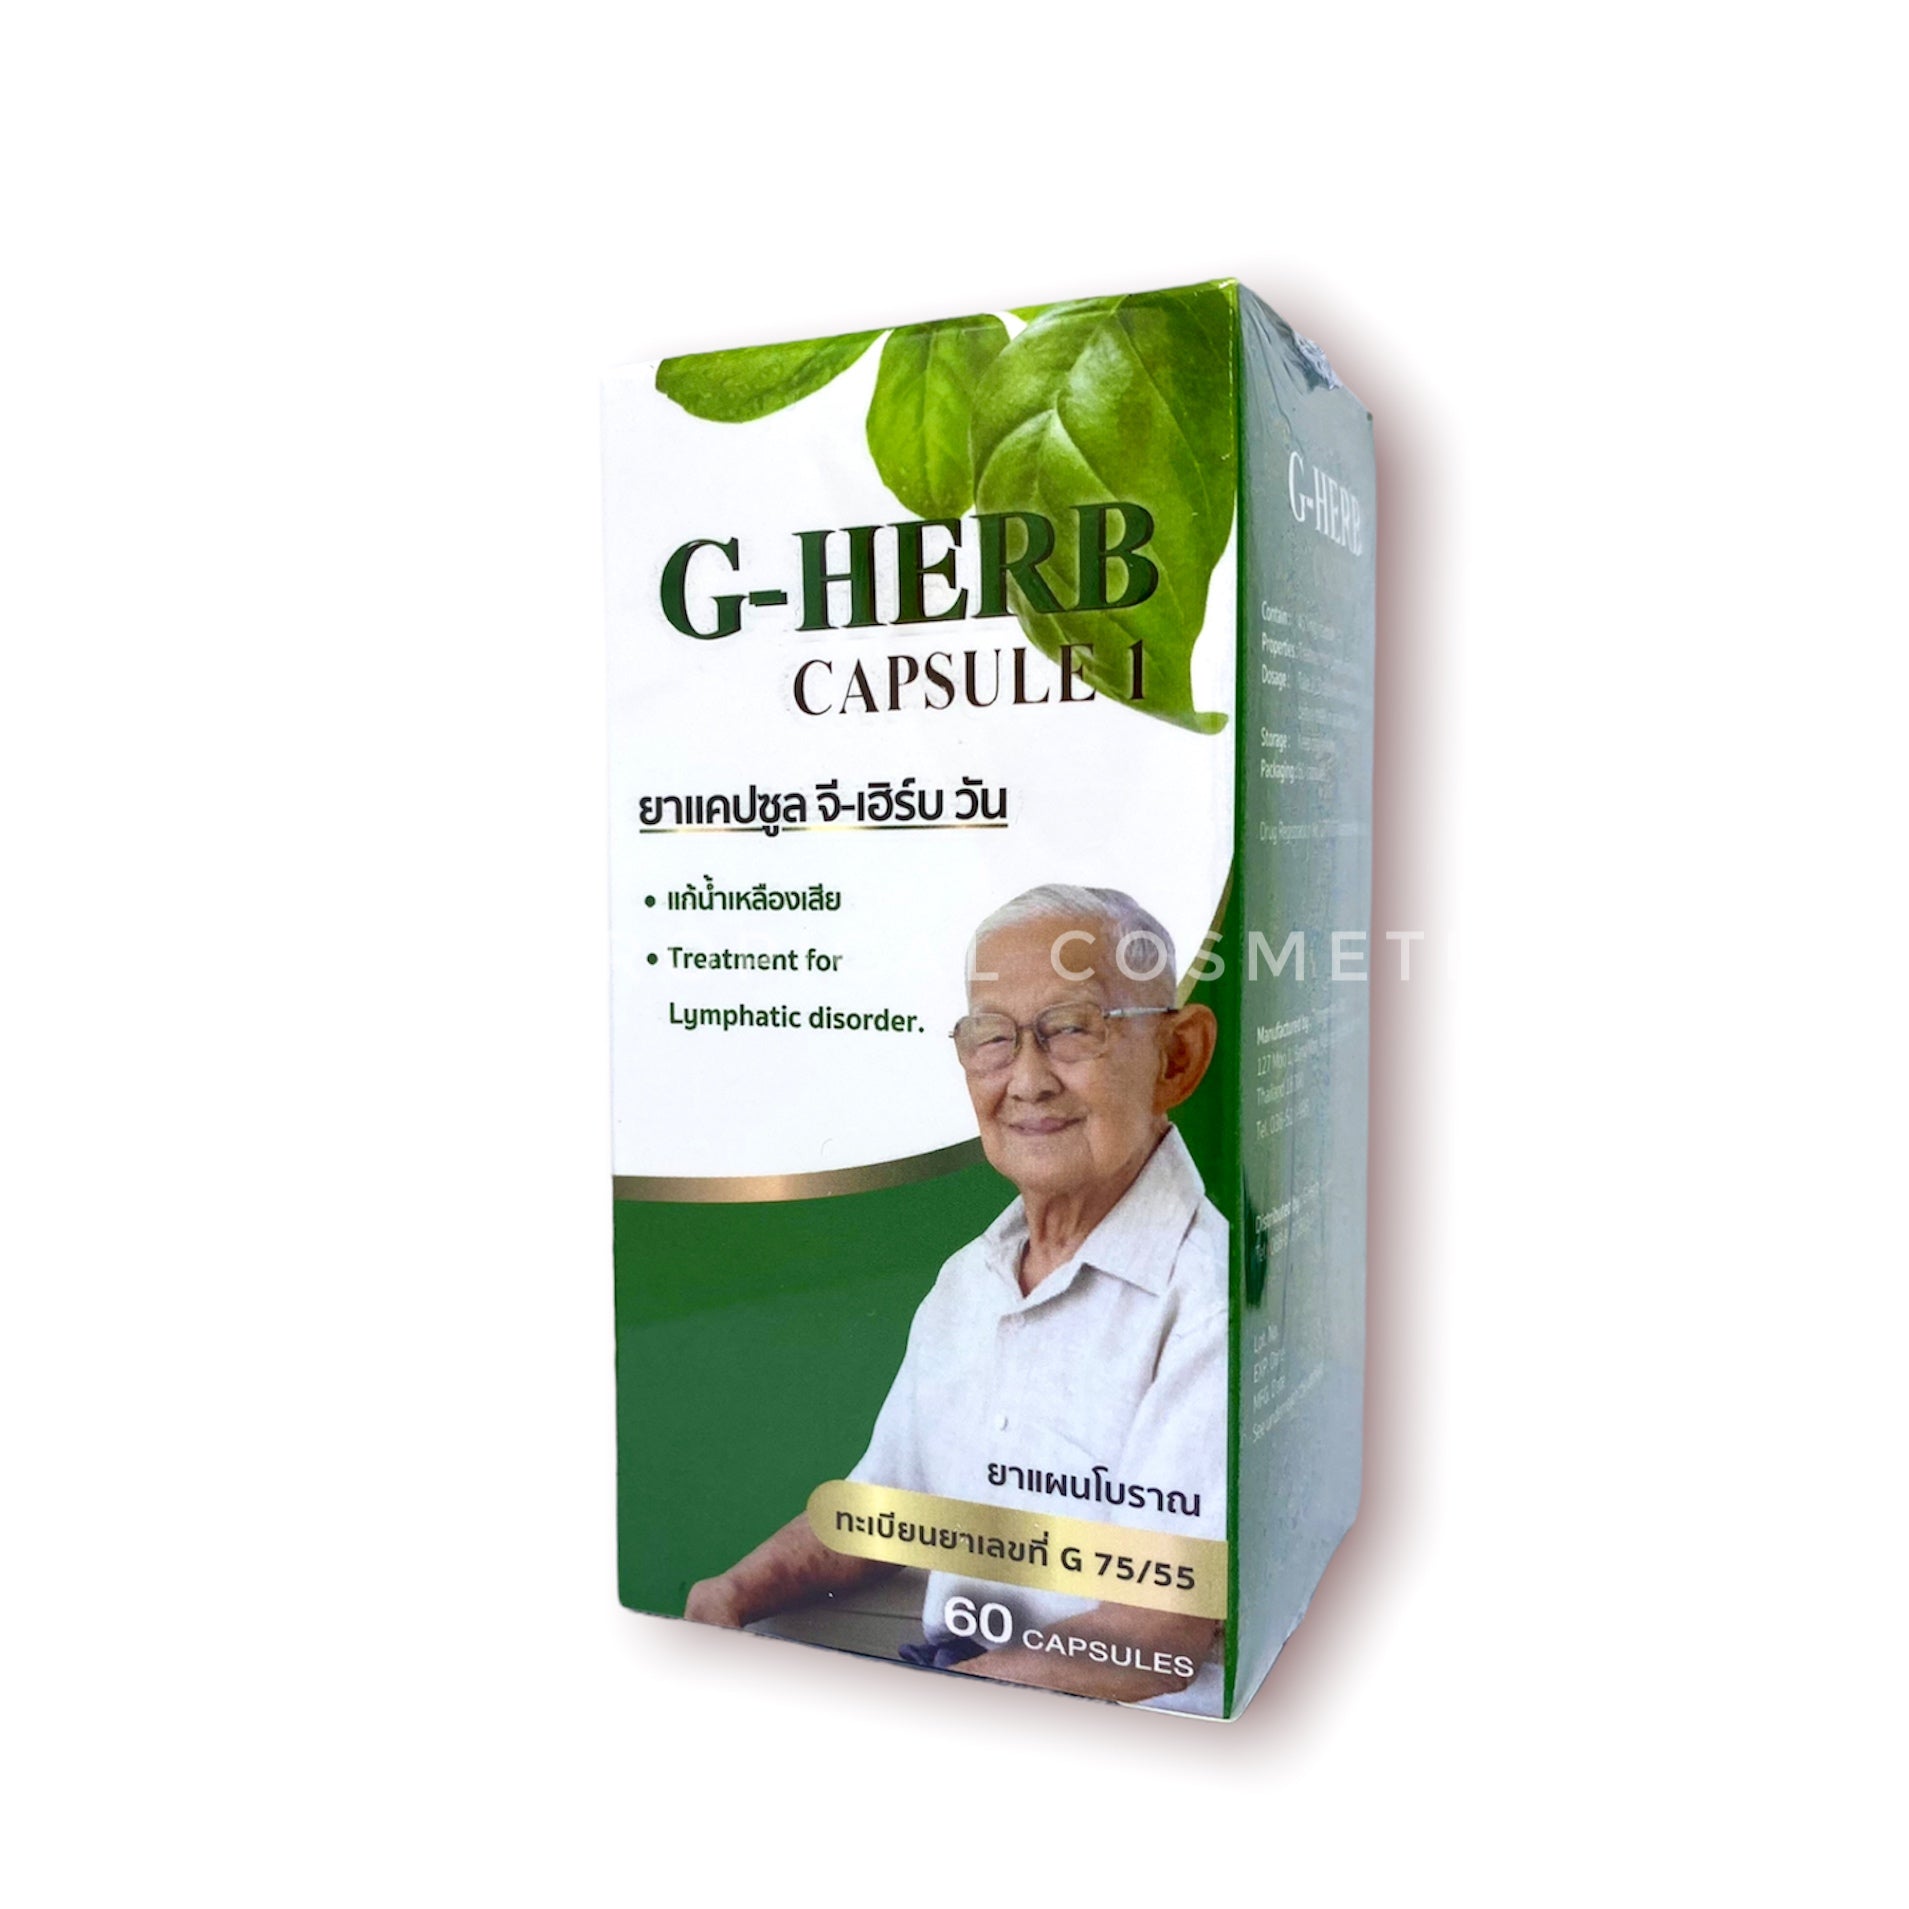 G-Herb Capsule One 60 caps., Травяные капсулы для очищения лимфатической системы 60 капсул